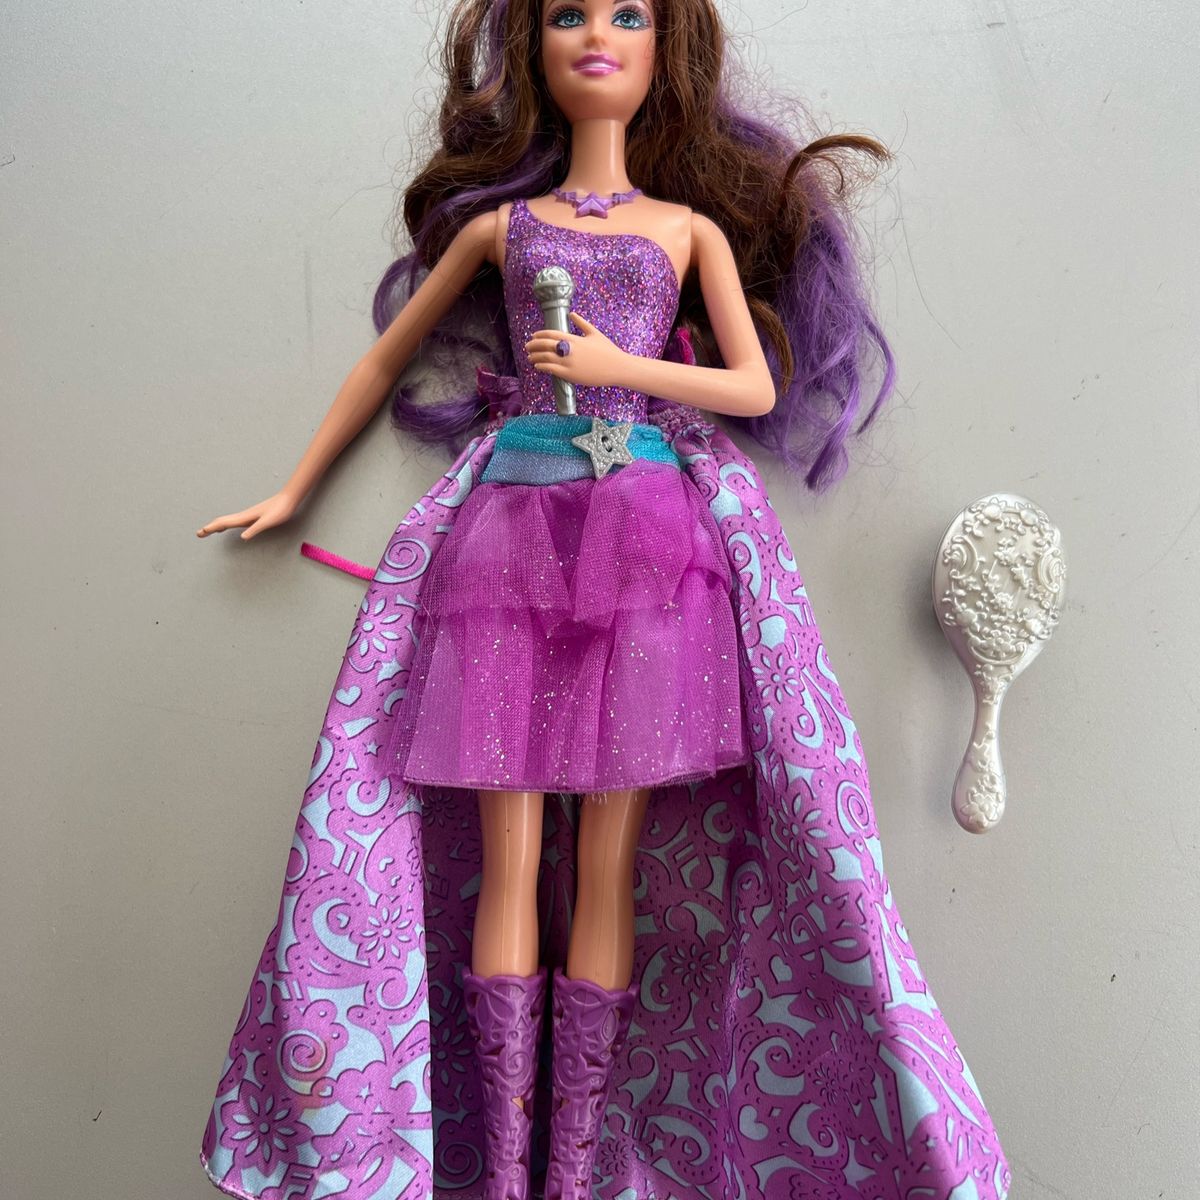 Barbie - A Princesa E A Pop Star em Promoção na Americanas